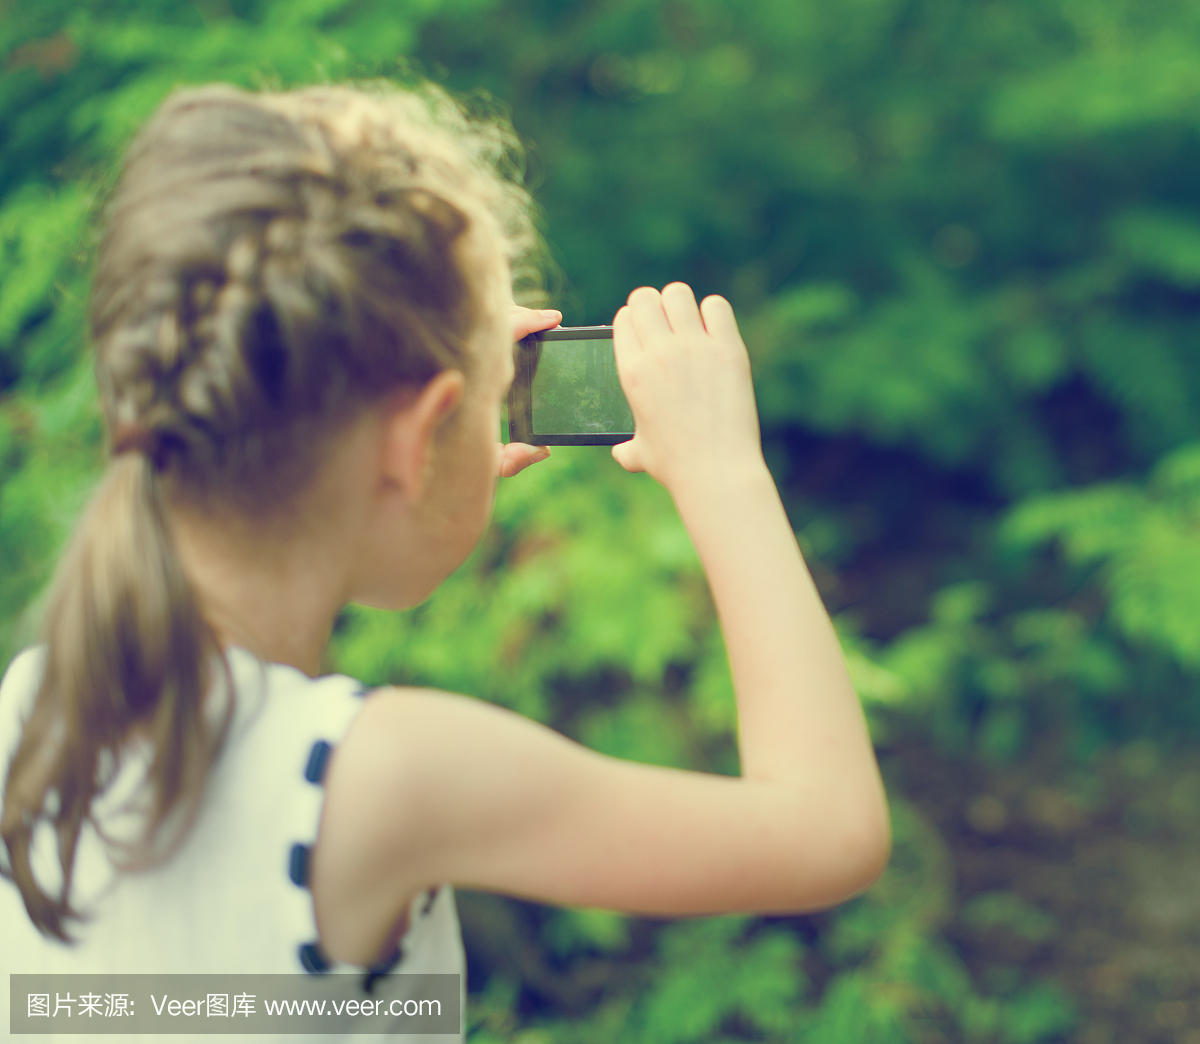 用手机制作视频或照片的小女孩。